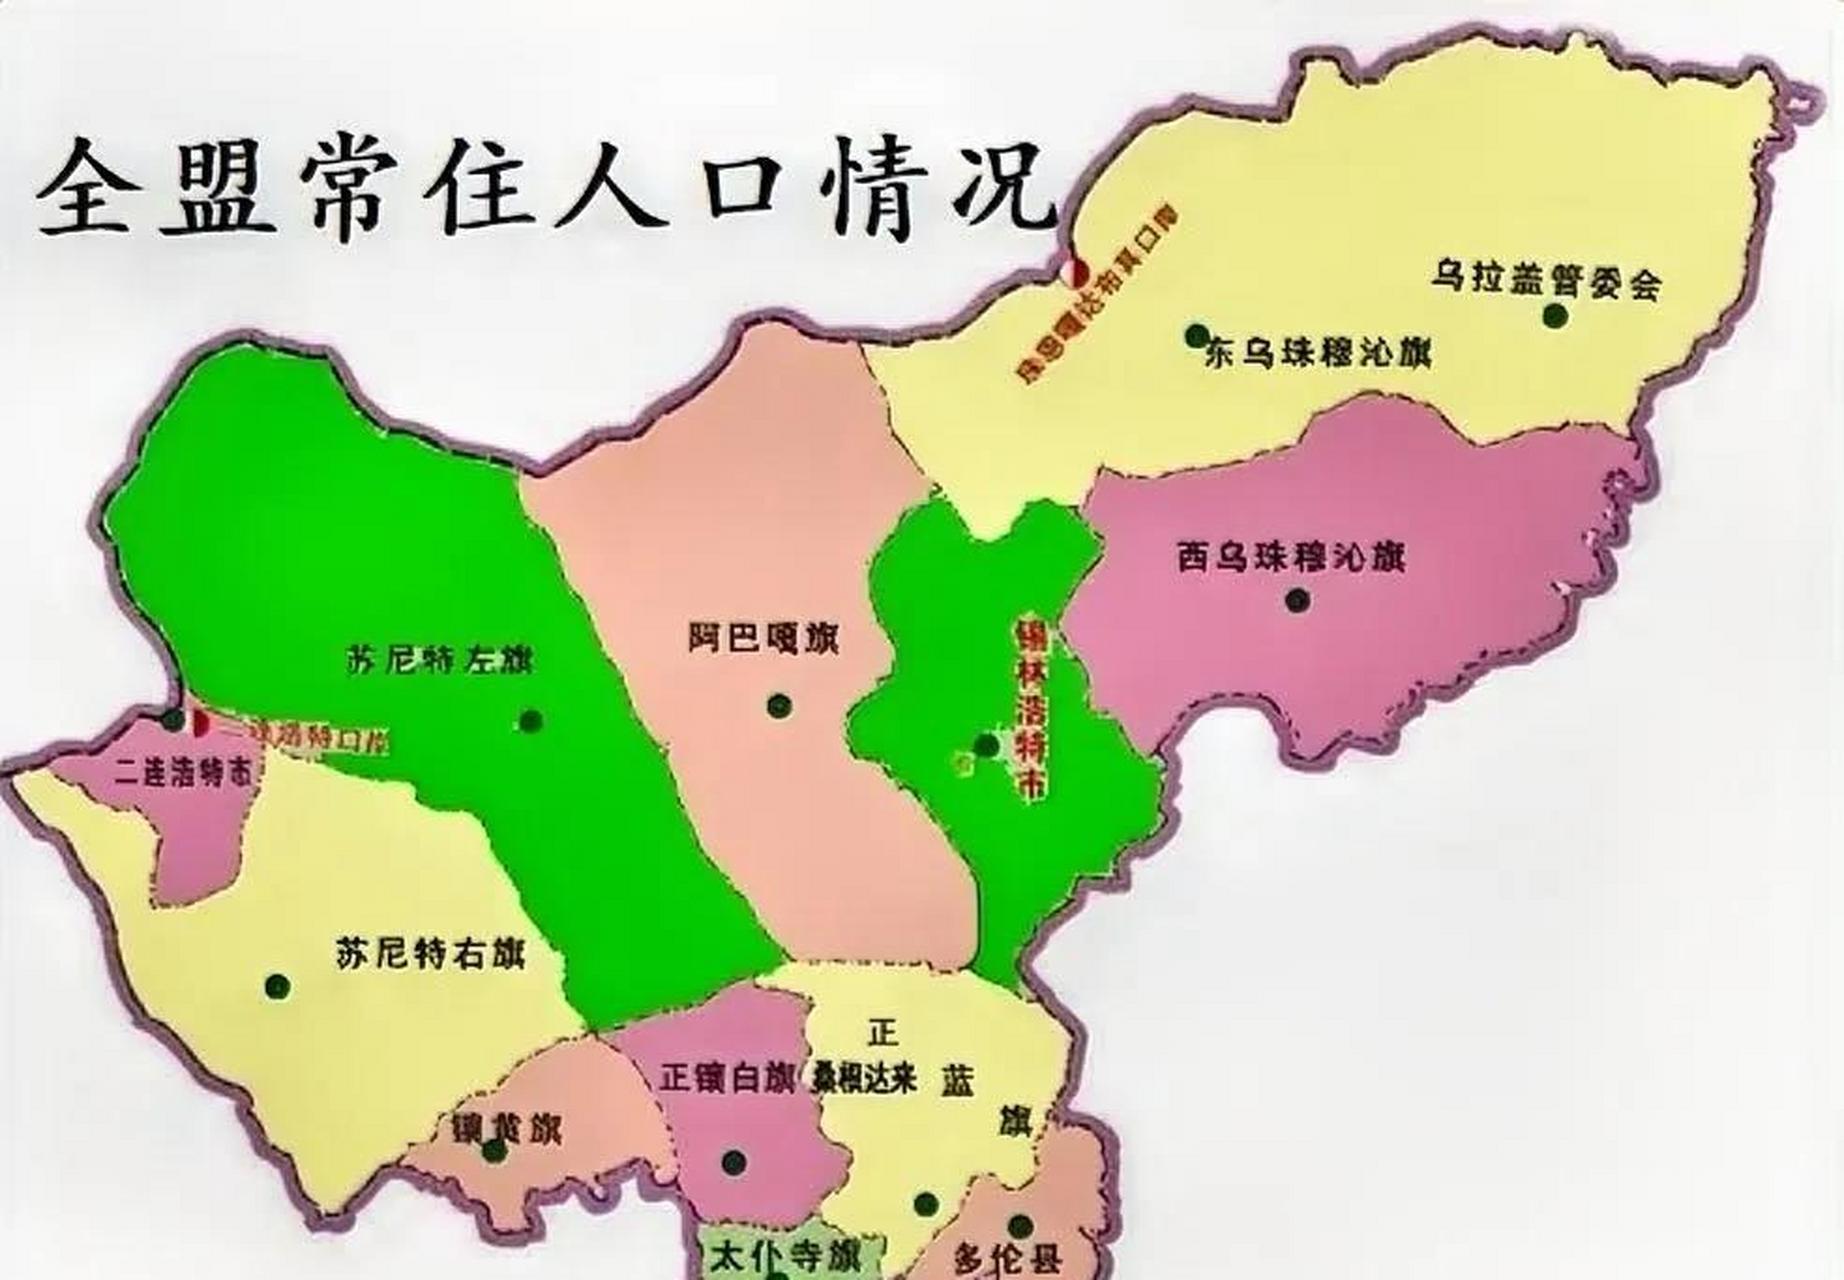 锡林郭勒盟各旗县常住人口排名情况 全盟共有13个旗县区,现将常住人口